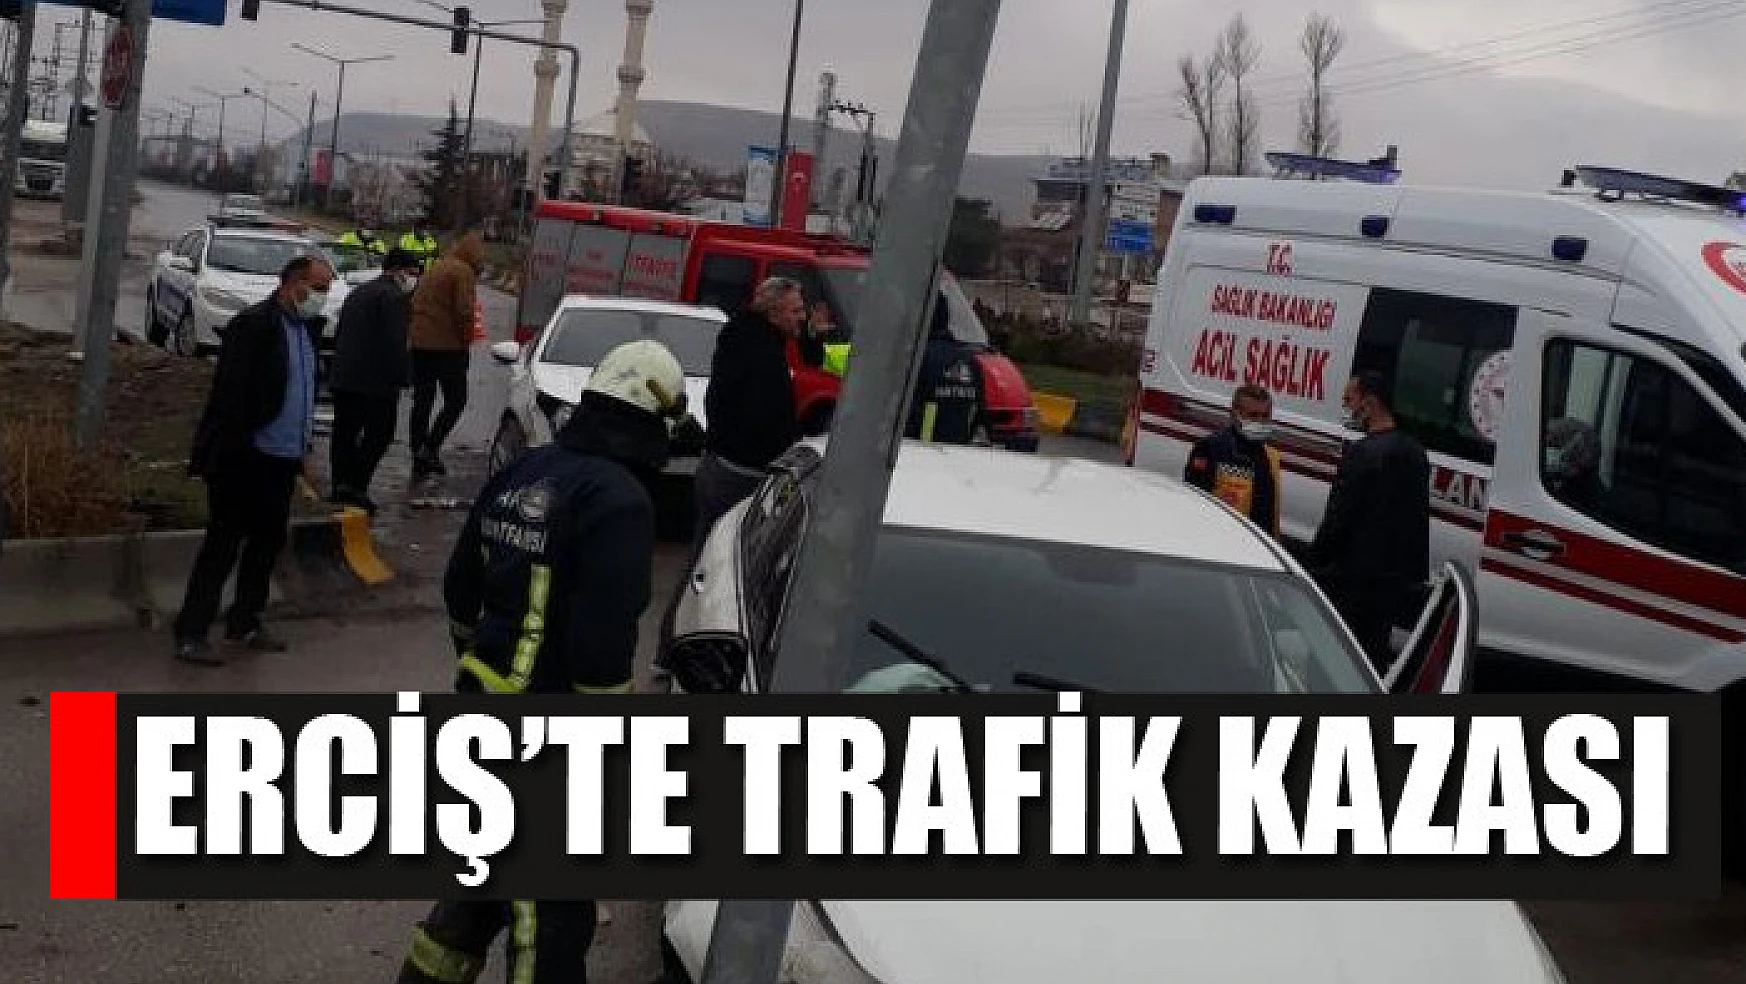 Erciş'te trafik kazası: 3 yaralı